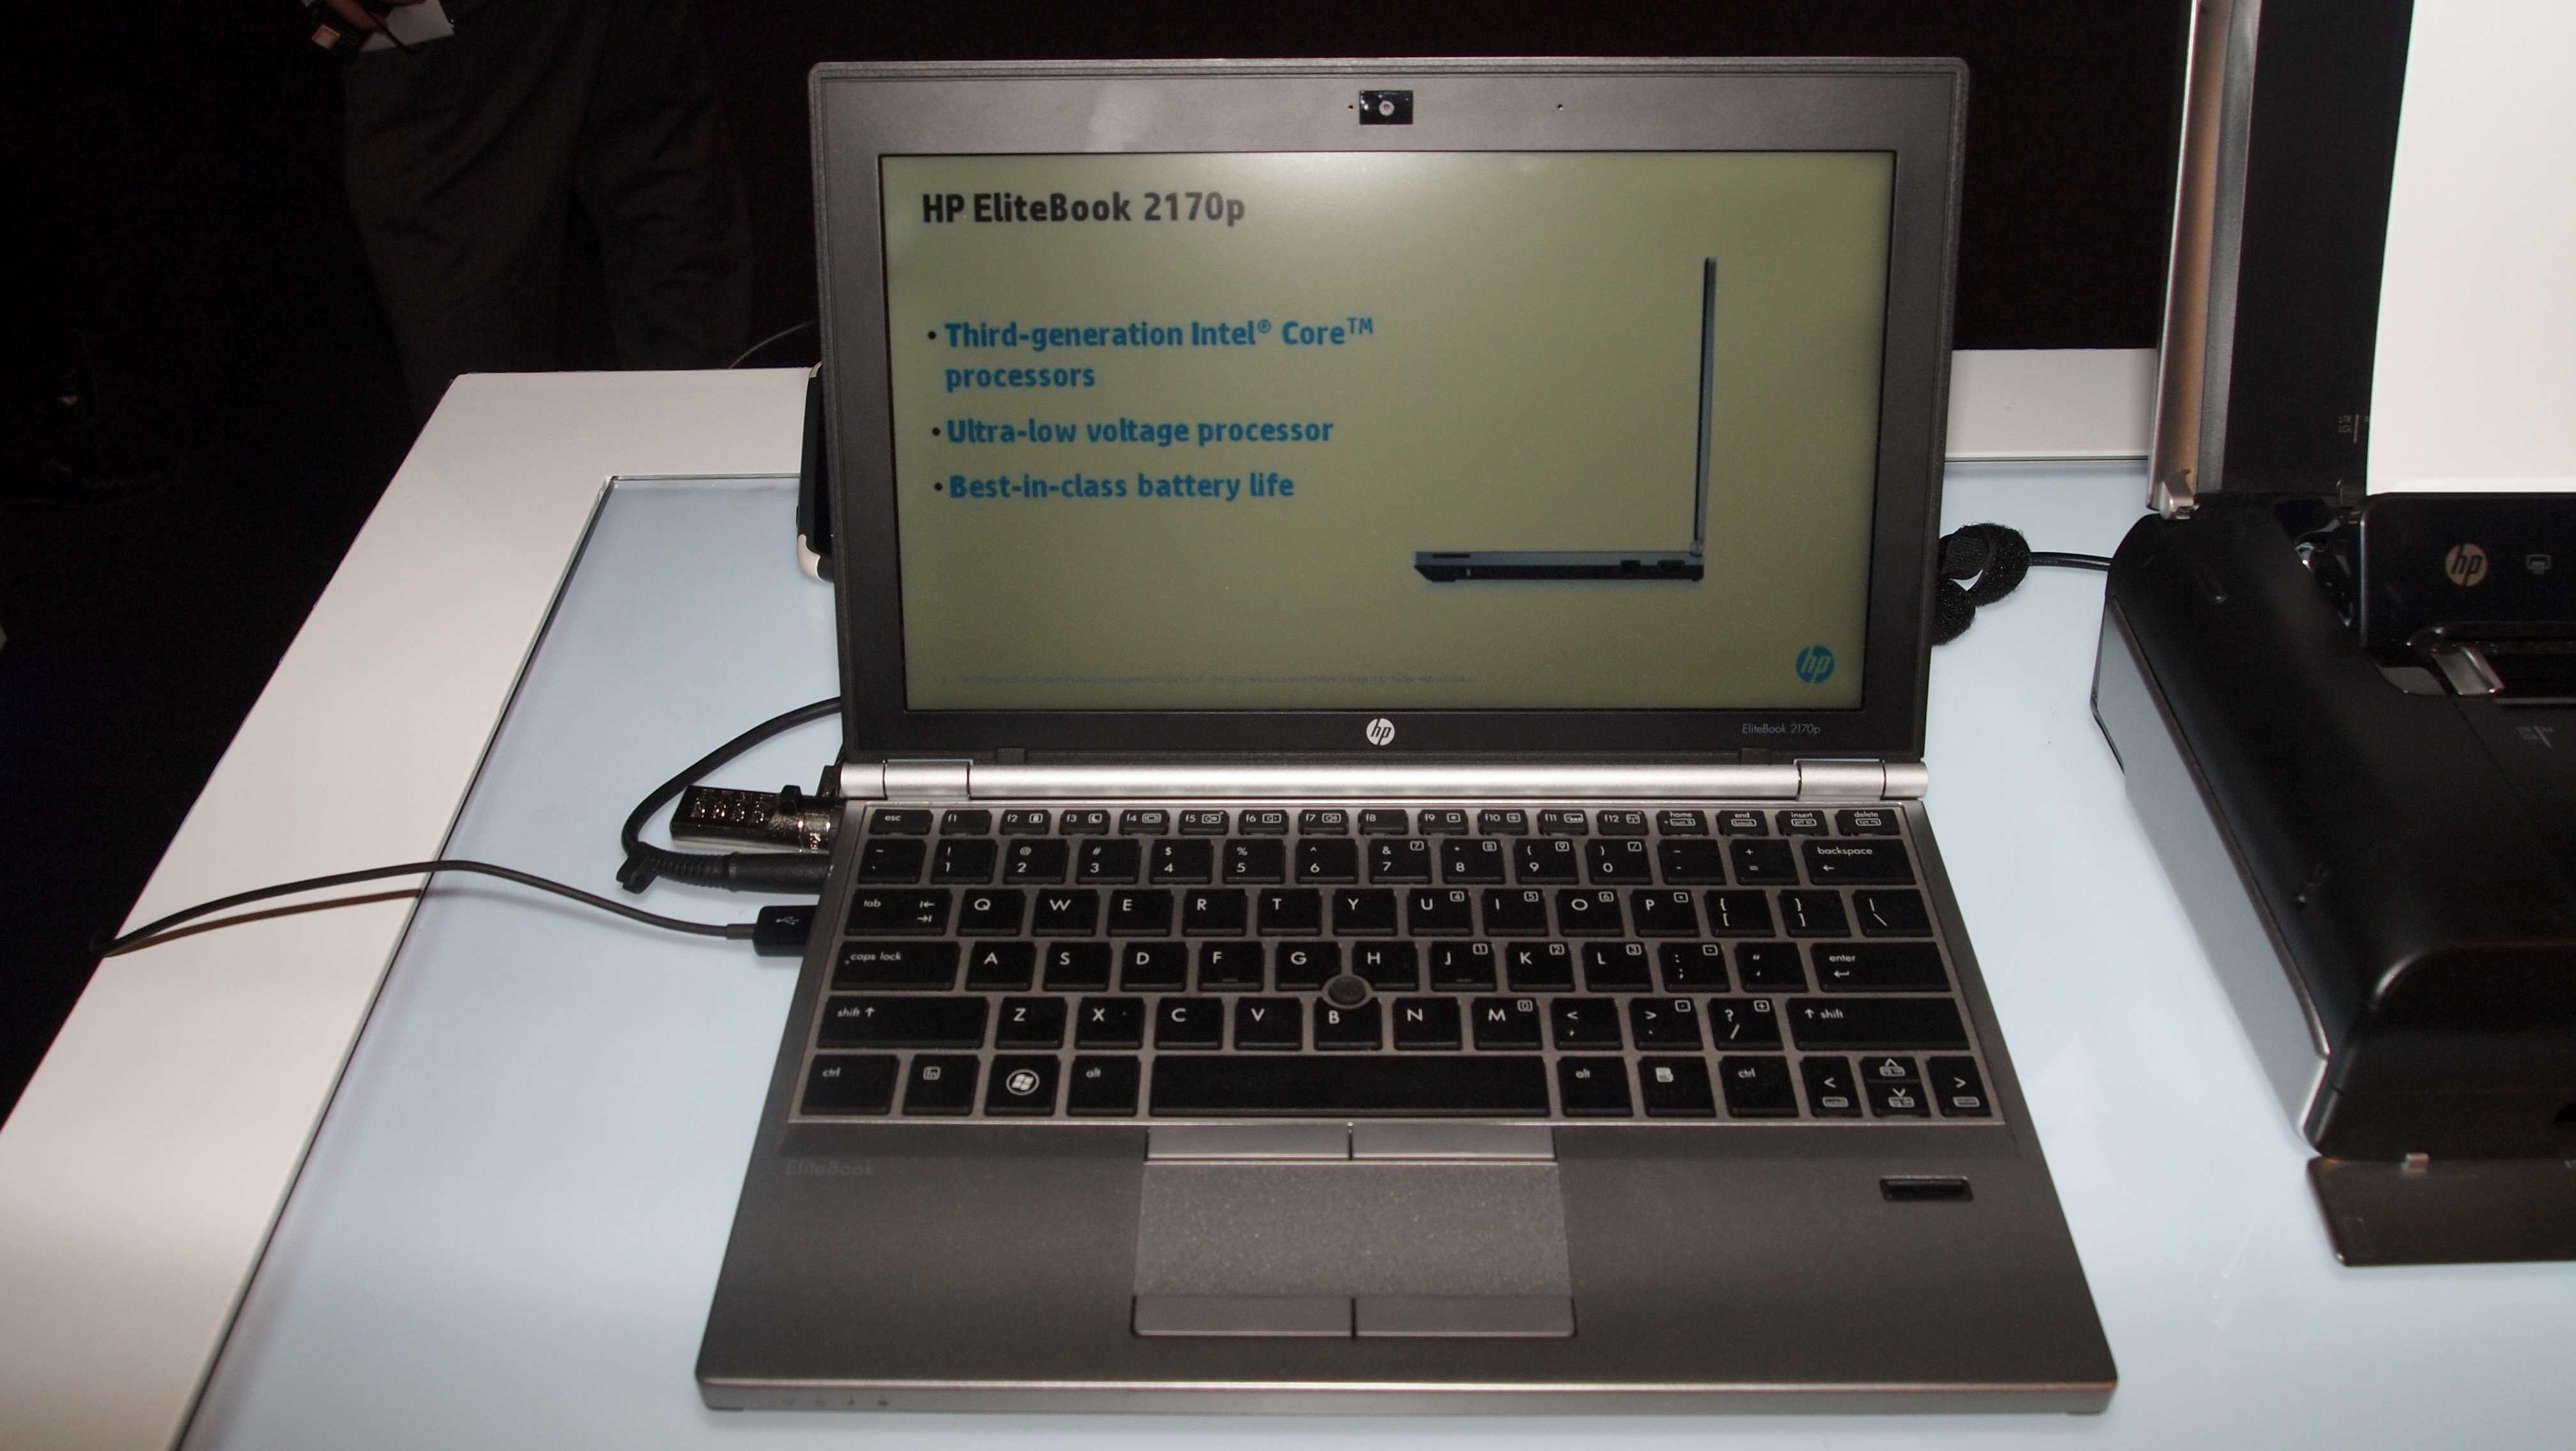 Hands-on review: HP EliteBook 2170p